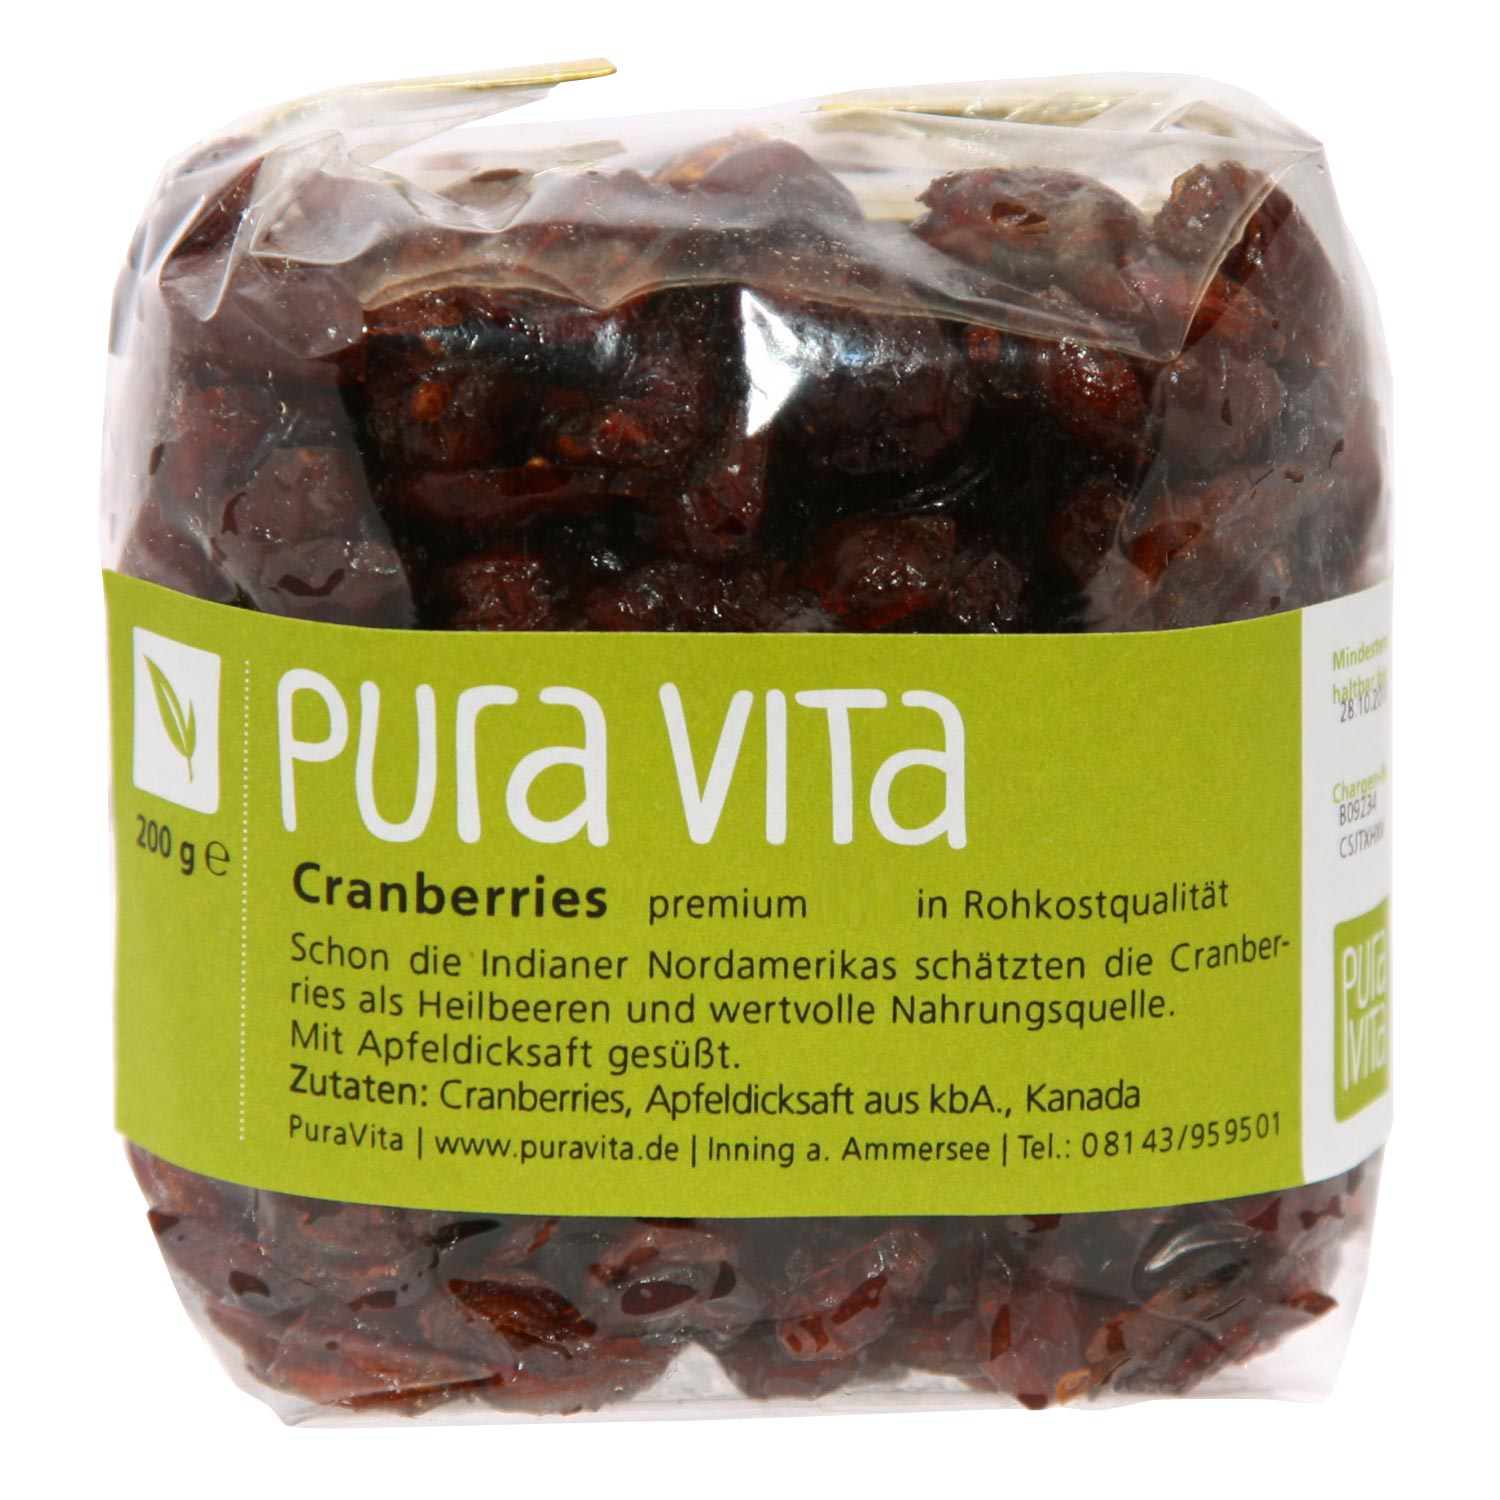 Cranberries von PuraVita - 200g